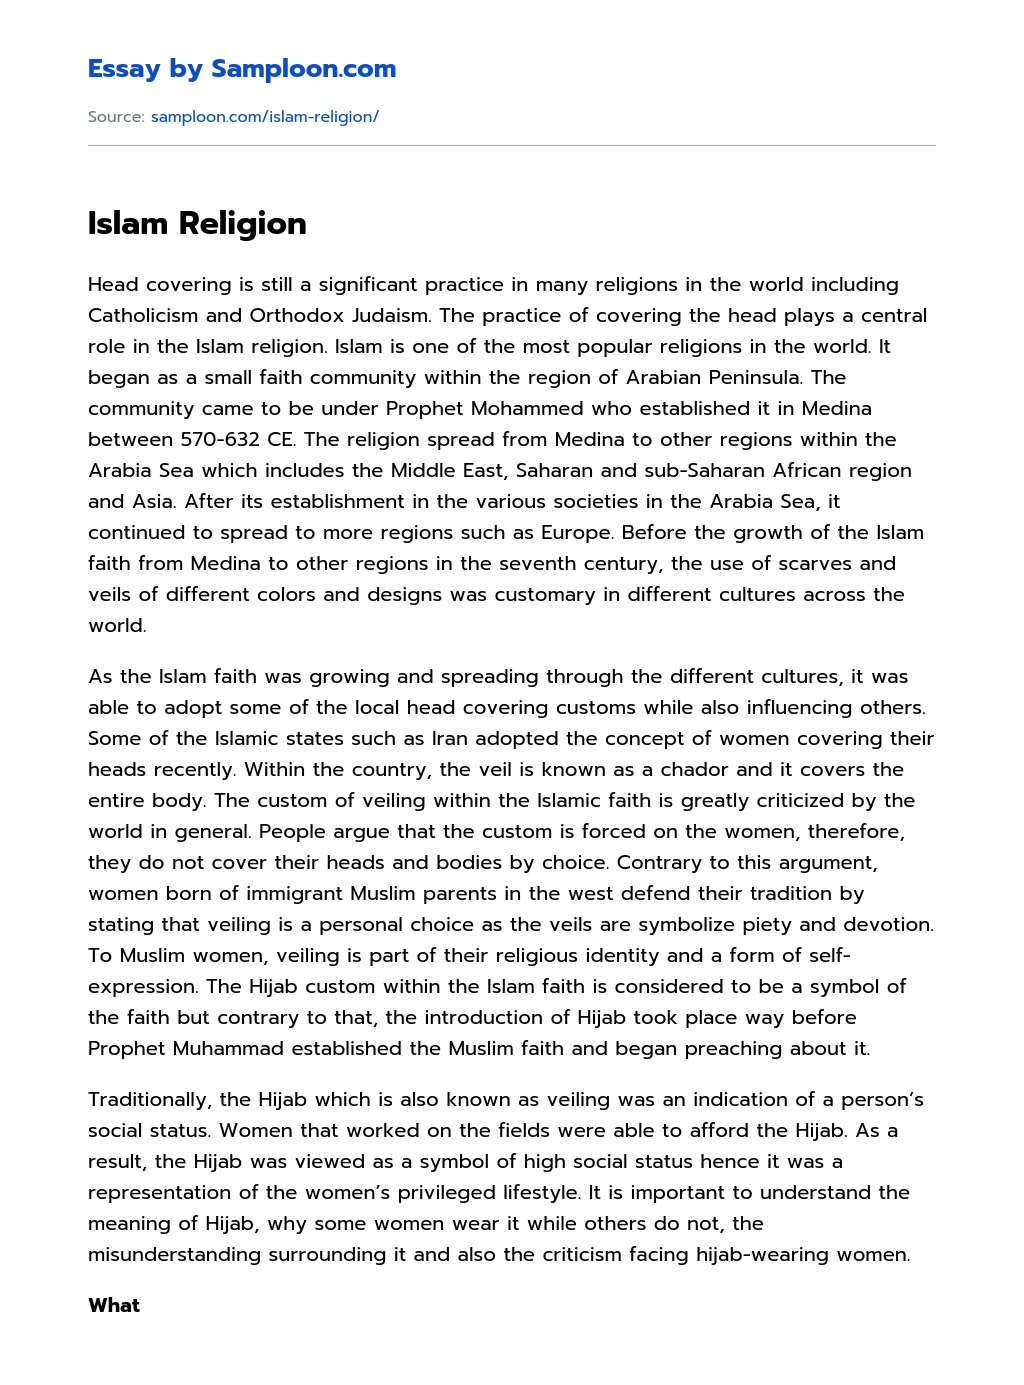 Islam Religion essay